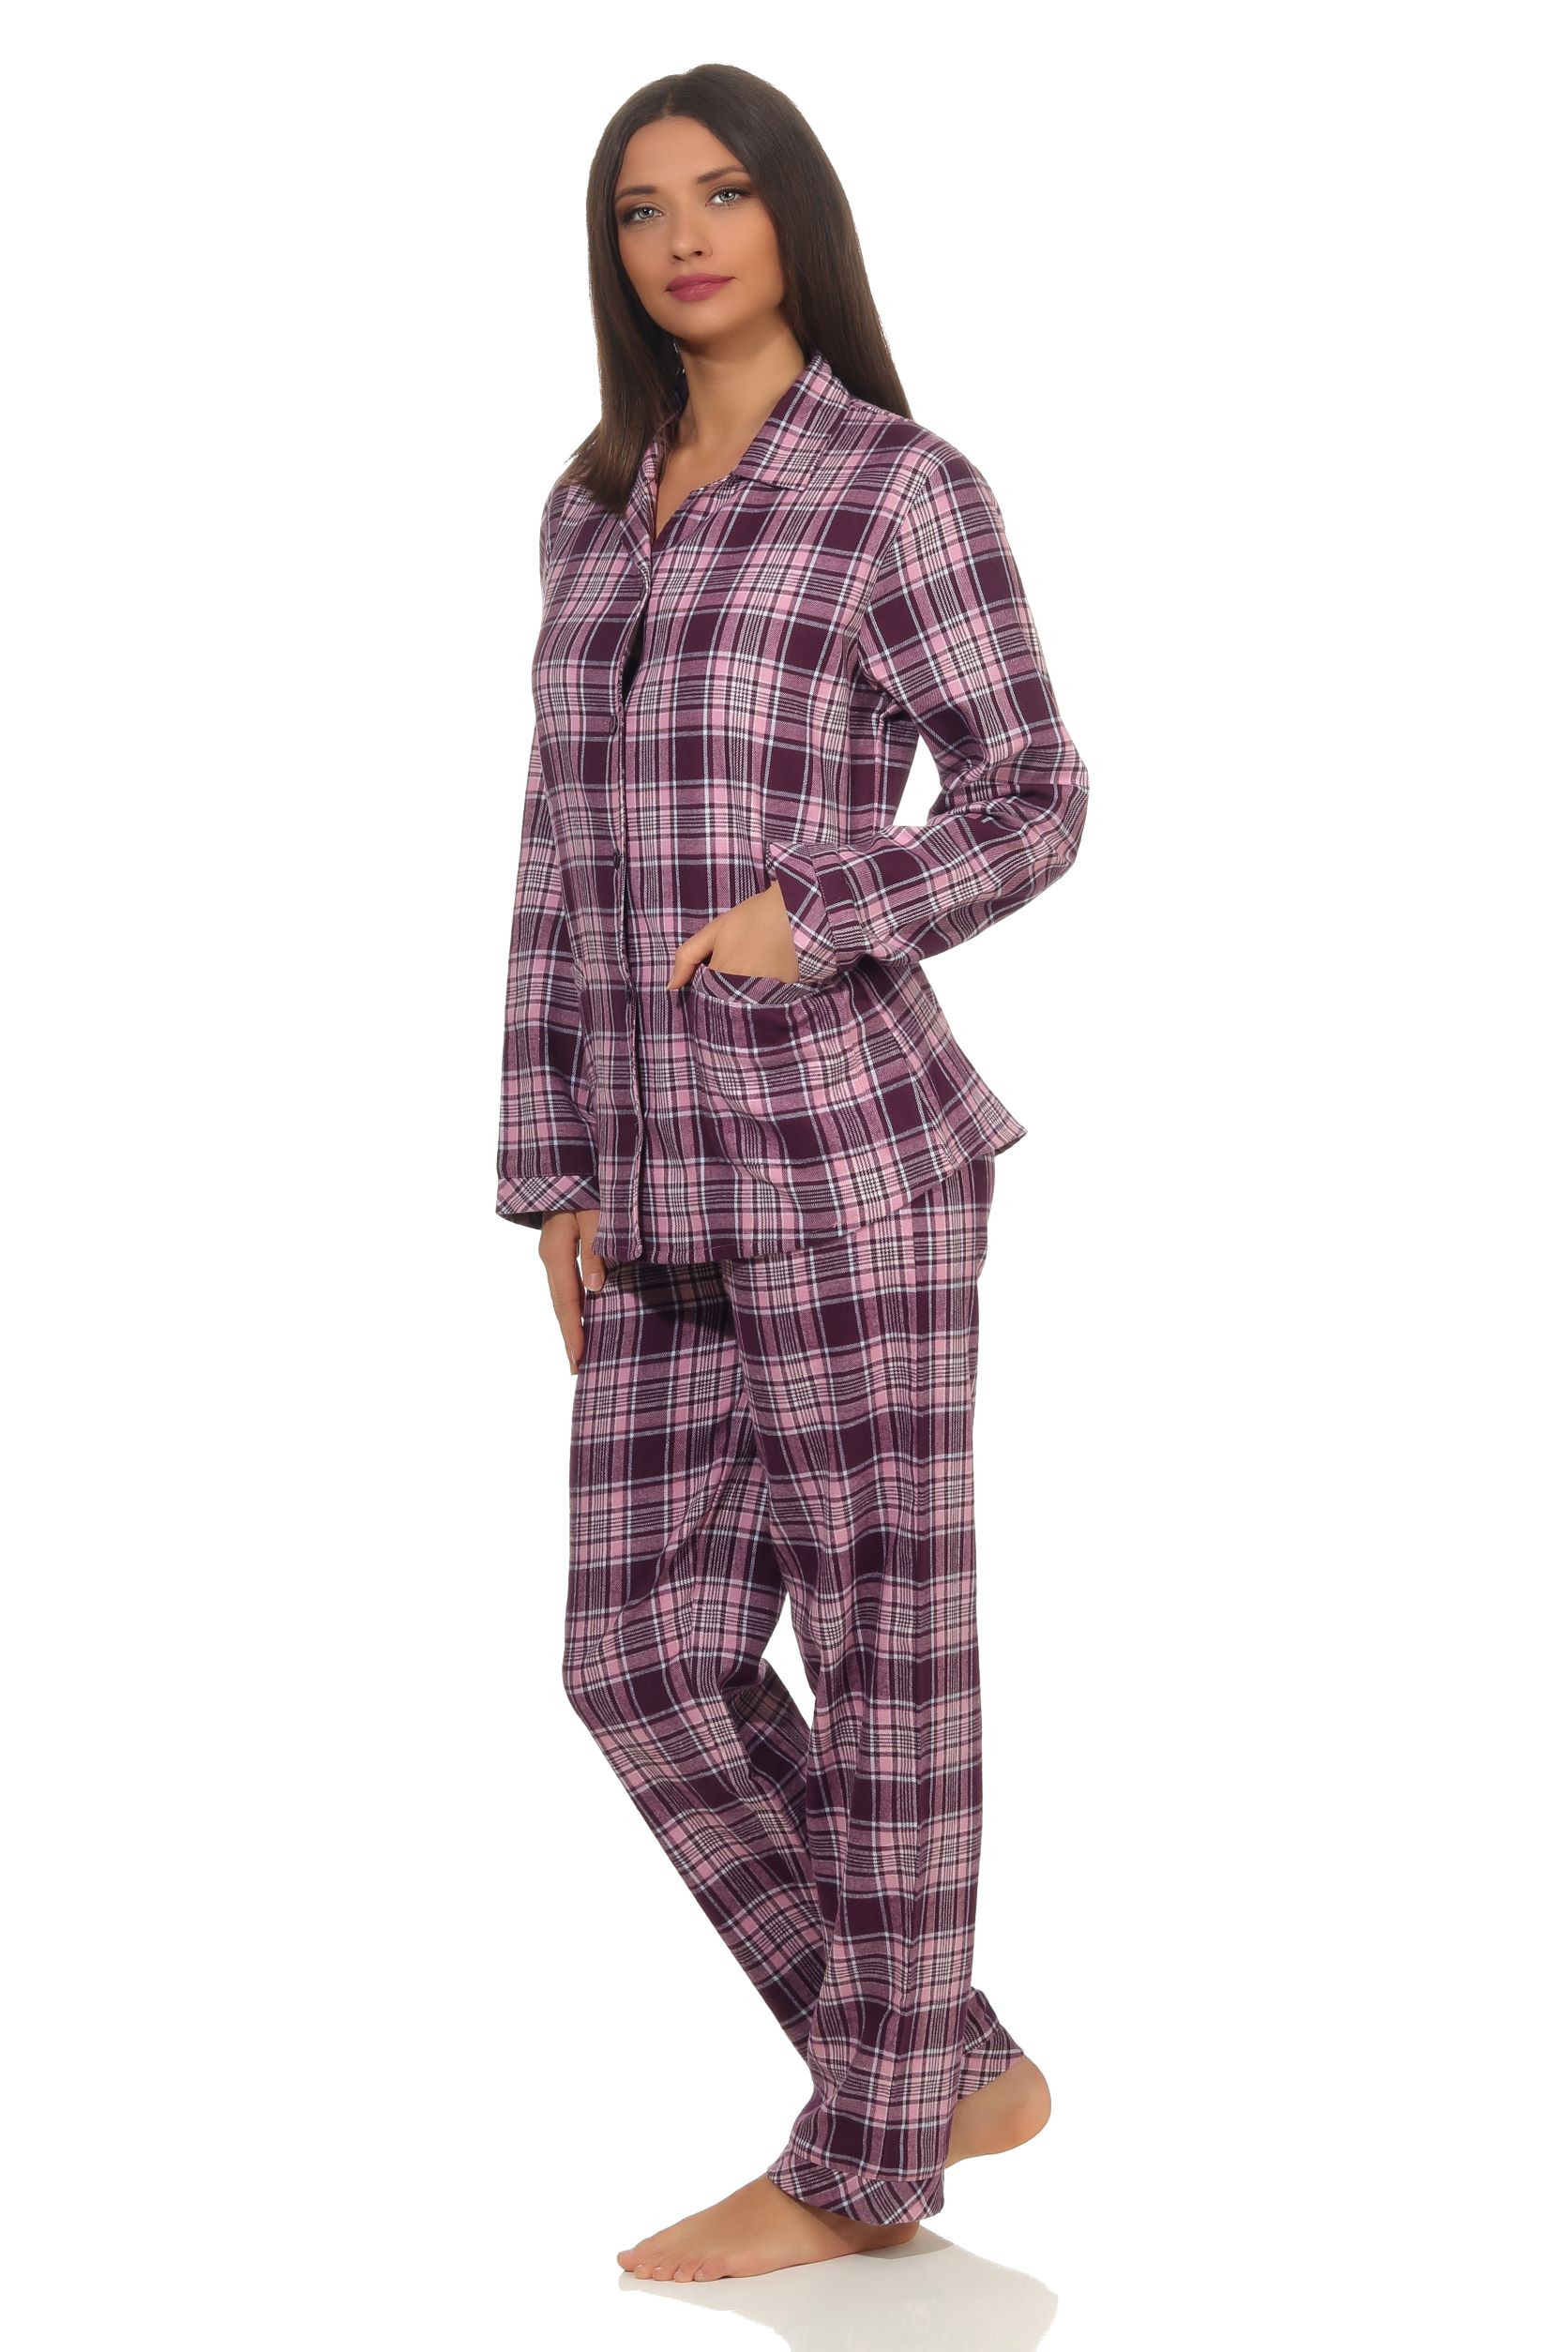 Dames pyjama Creative flanel 64299-S 36/38